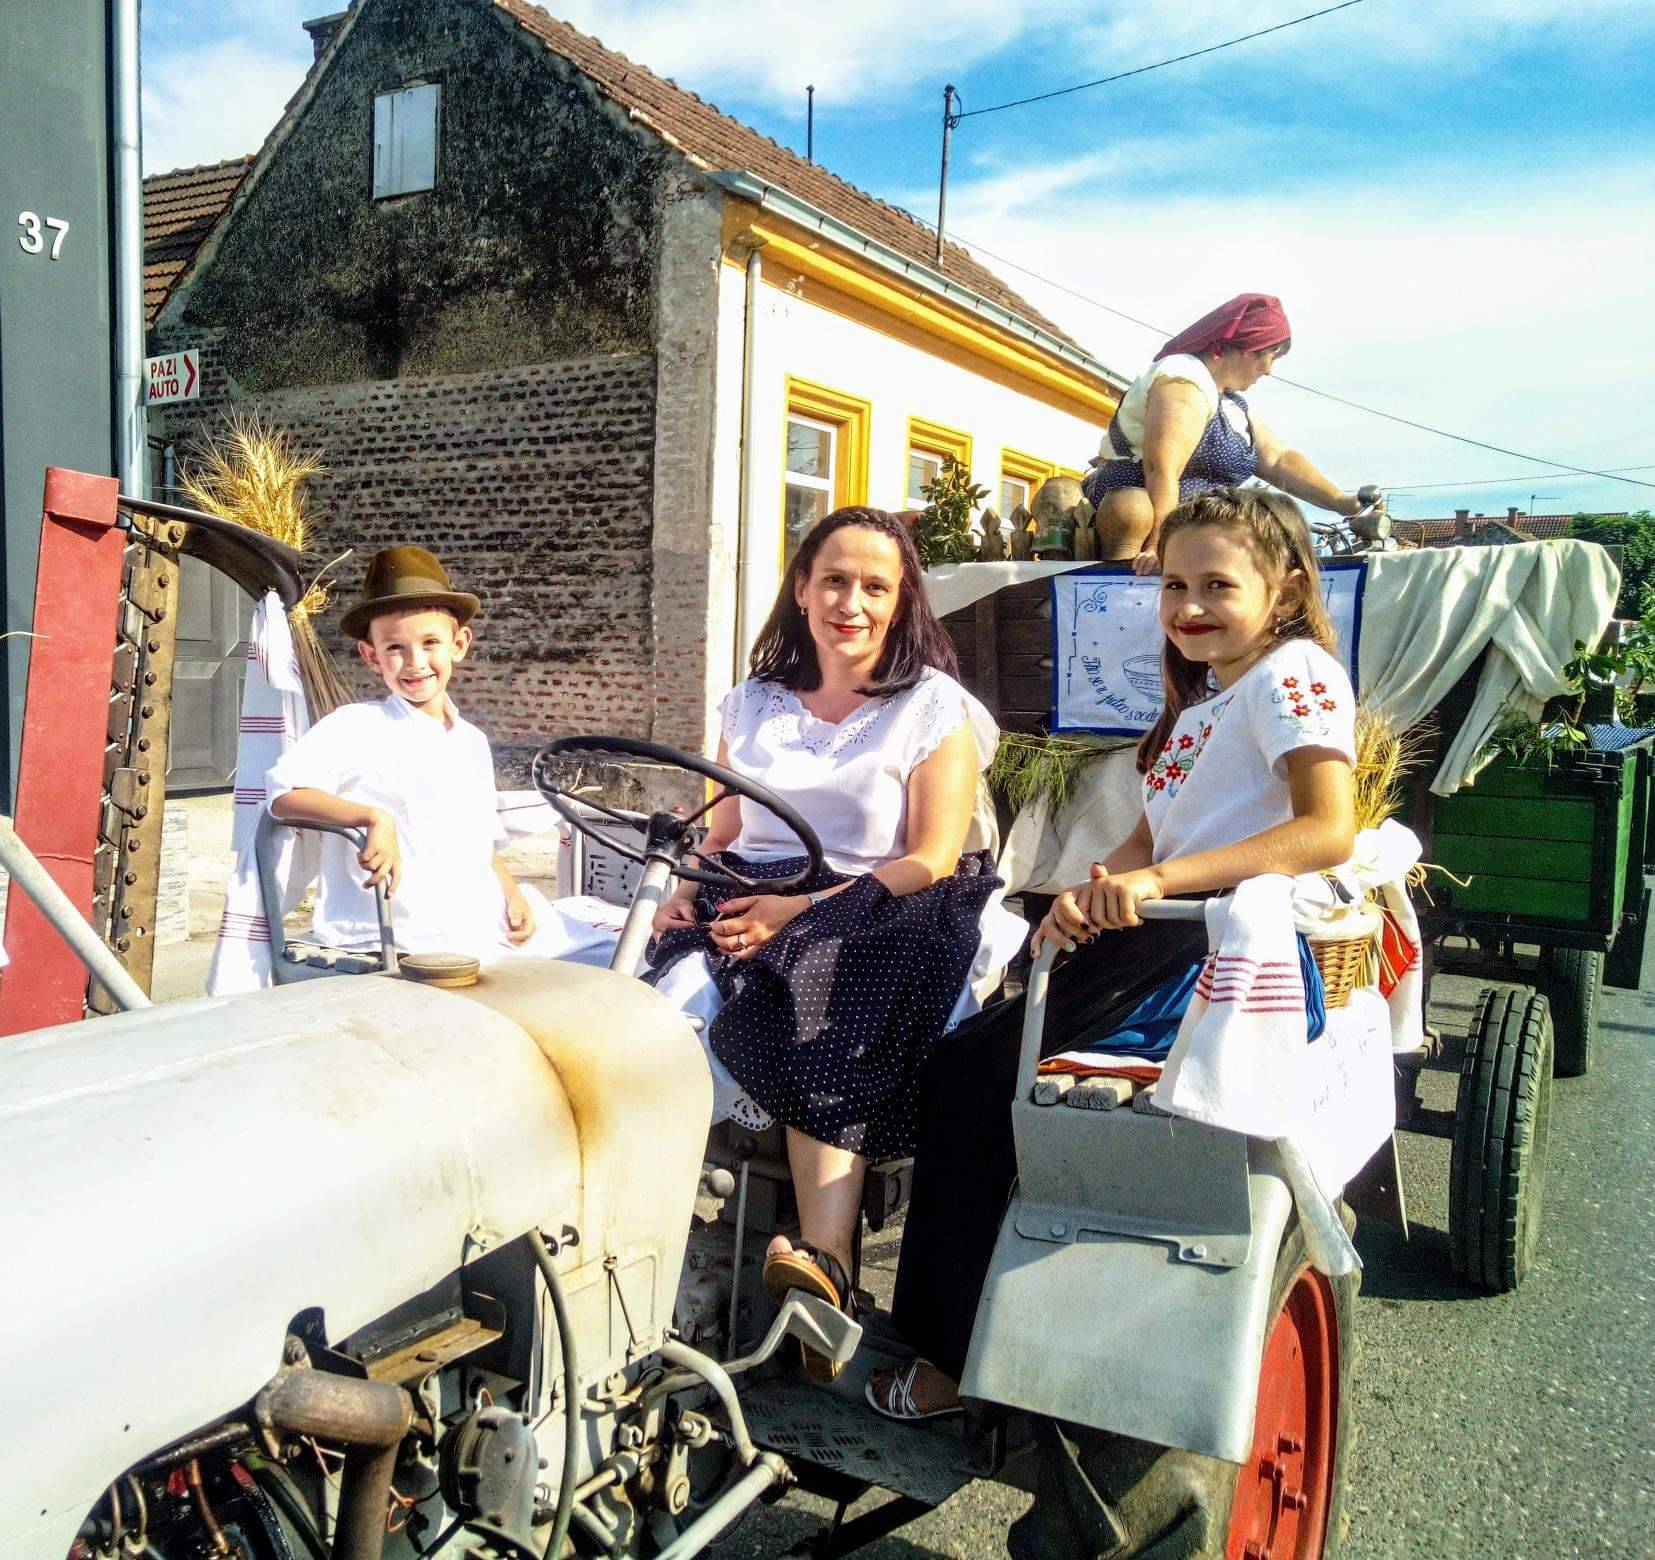 Traktor obitelji Dobrovec star je čak 63 godine: 'Pouzdana mašina, malo traži i puno daje'